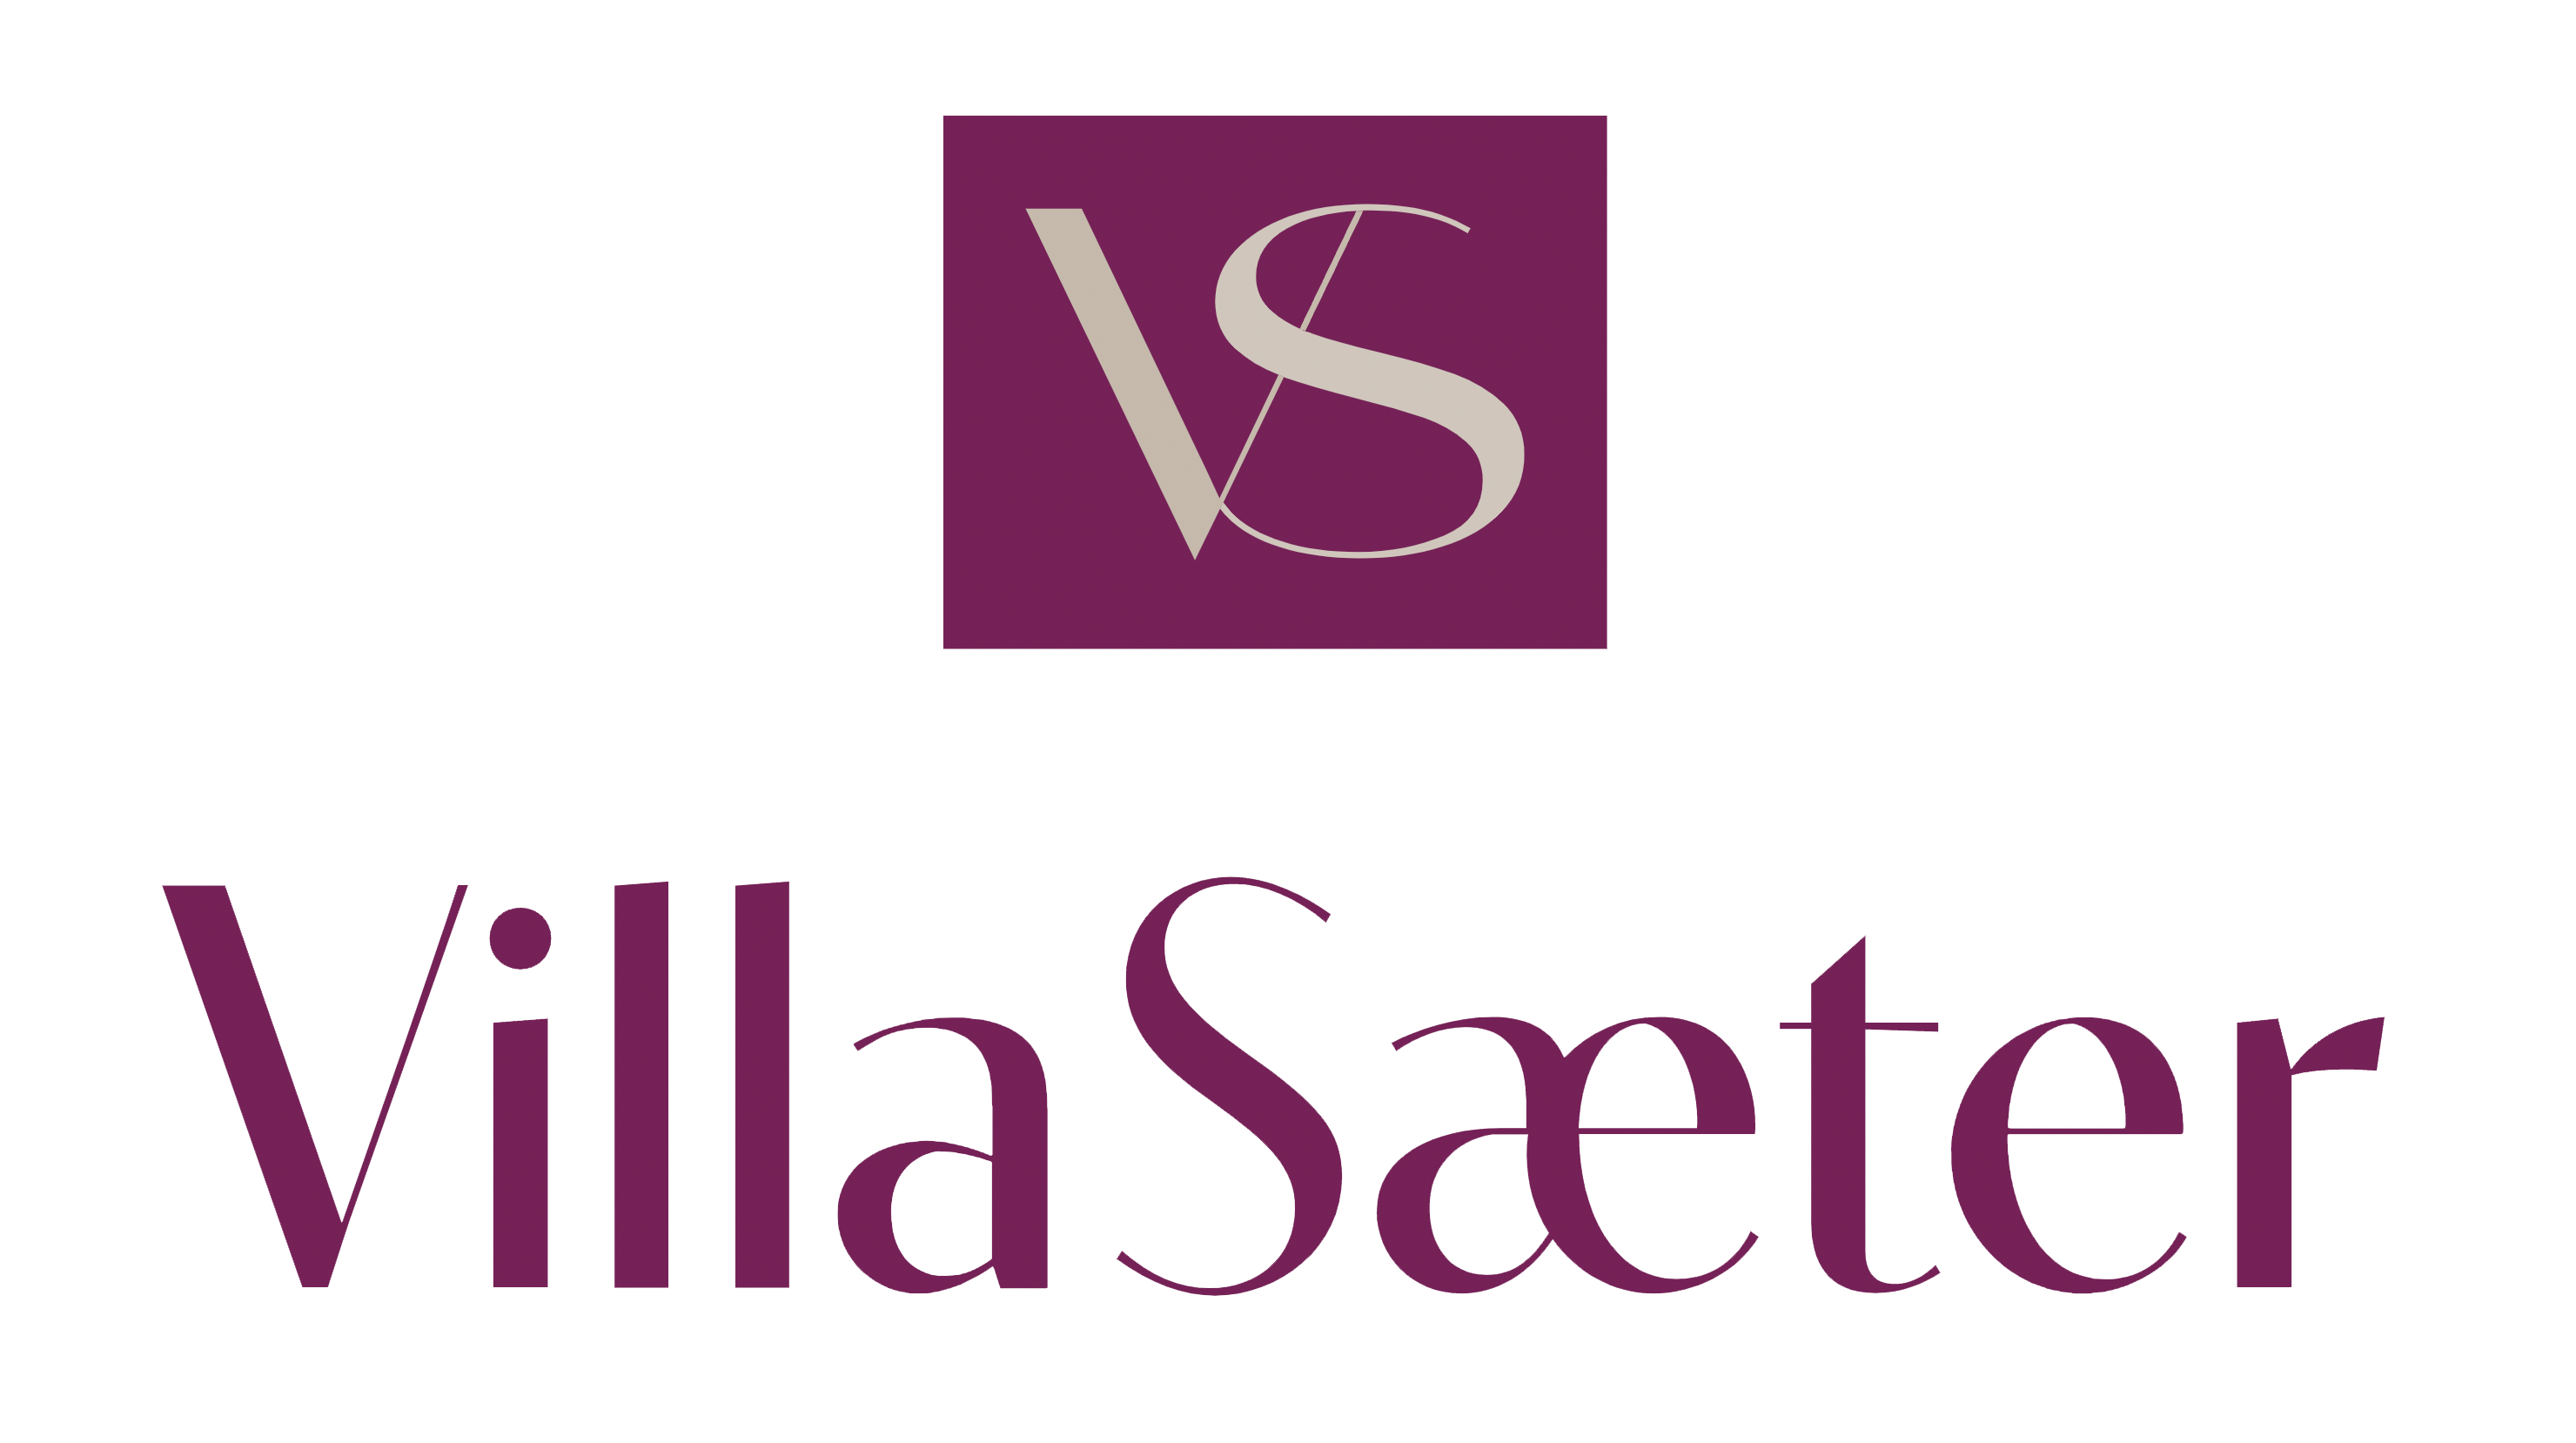 The logo for Villa Sæter.